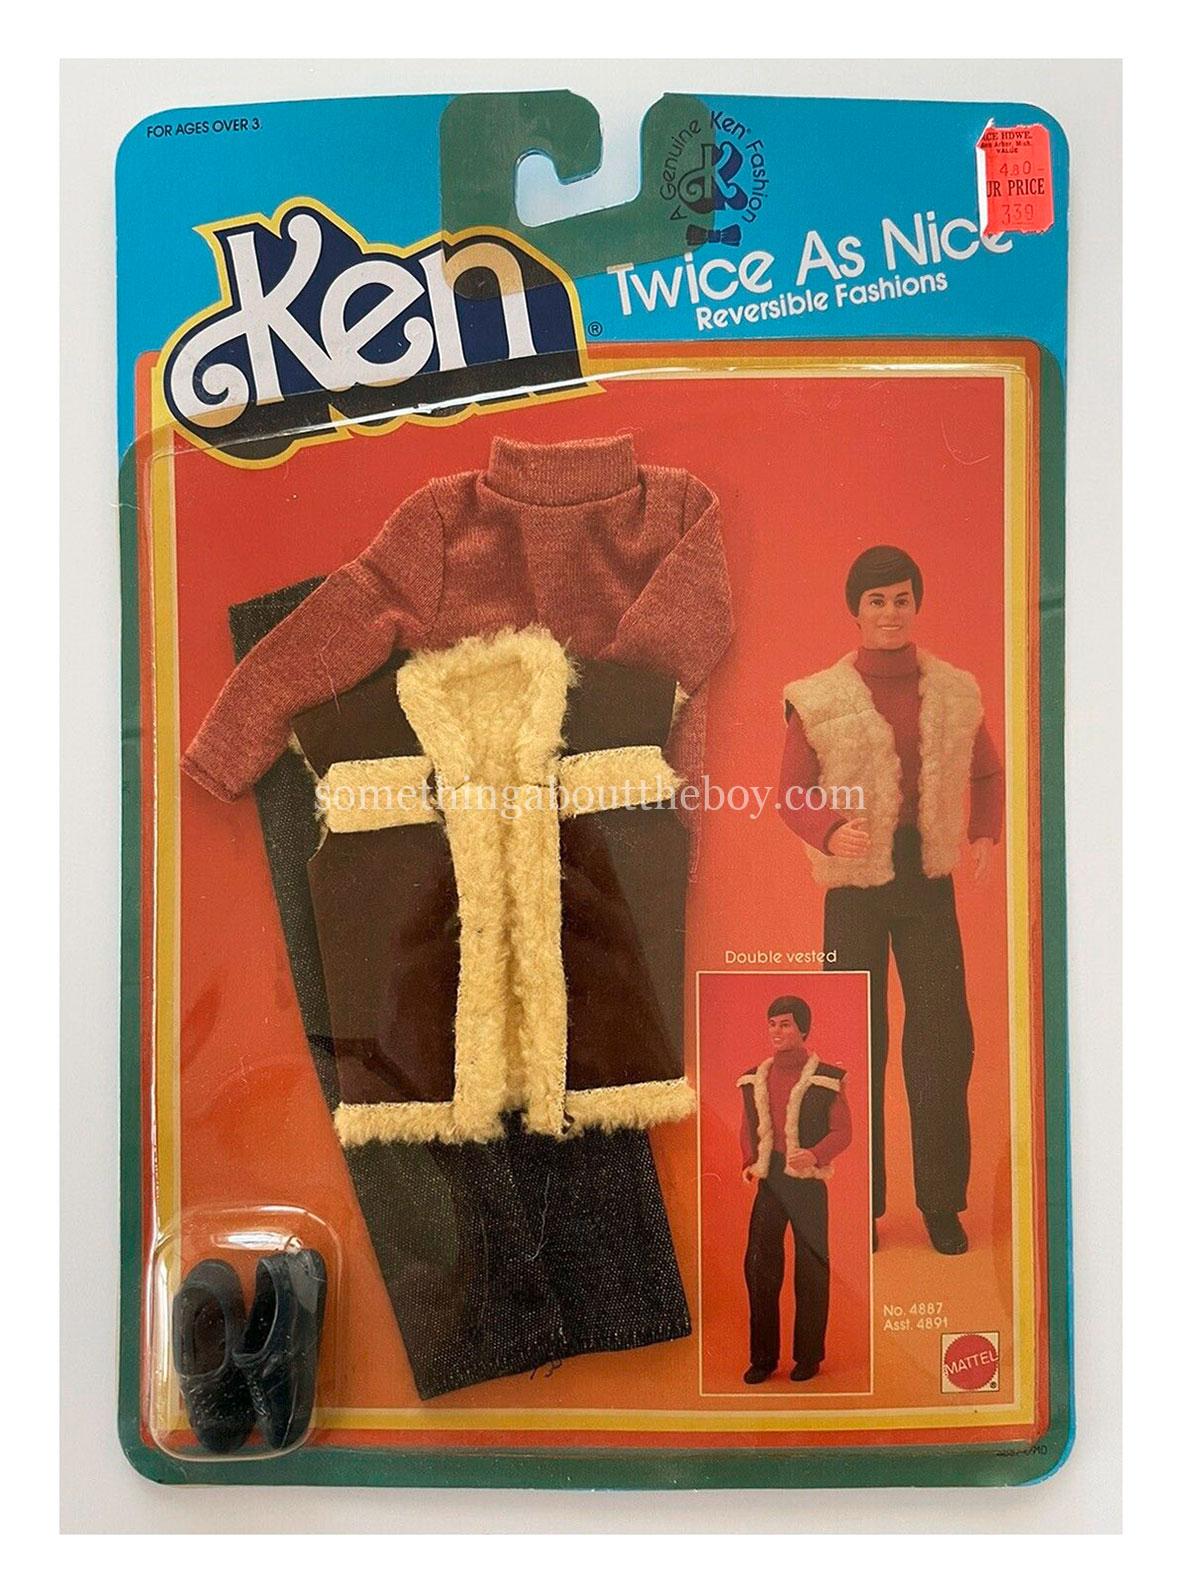 1984 Twice As Nice #4887 in original packaging